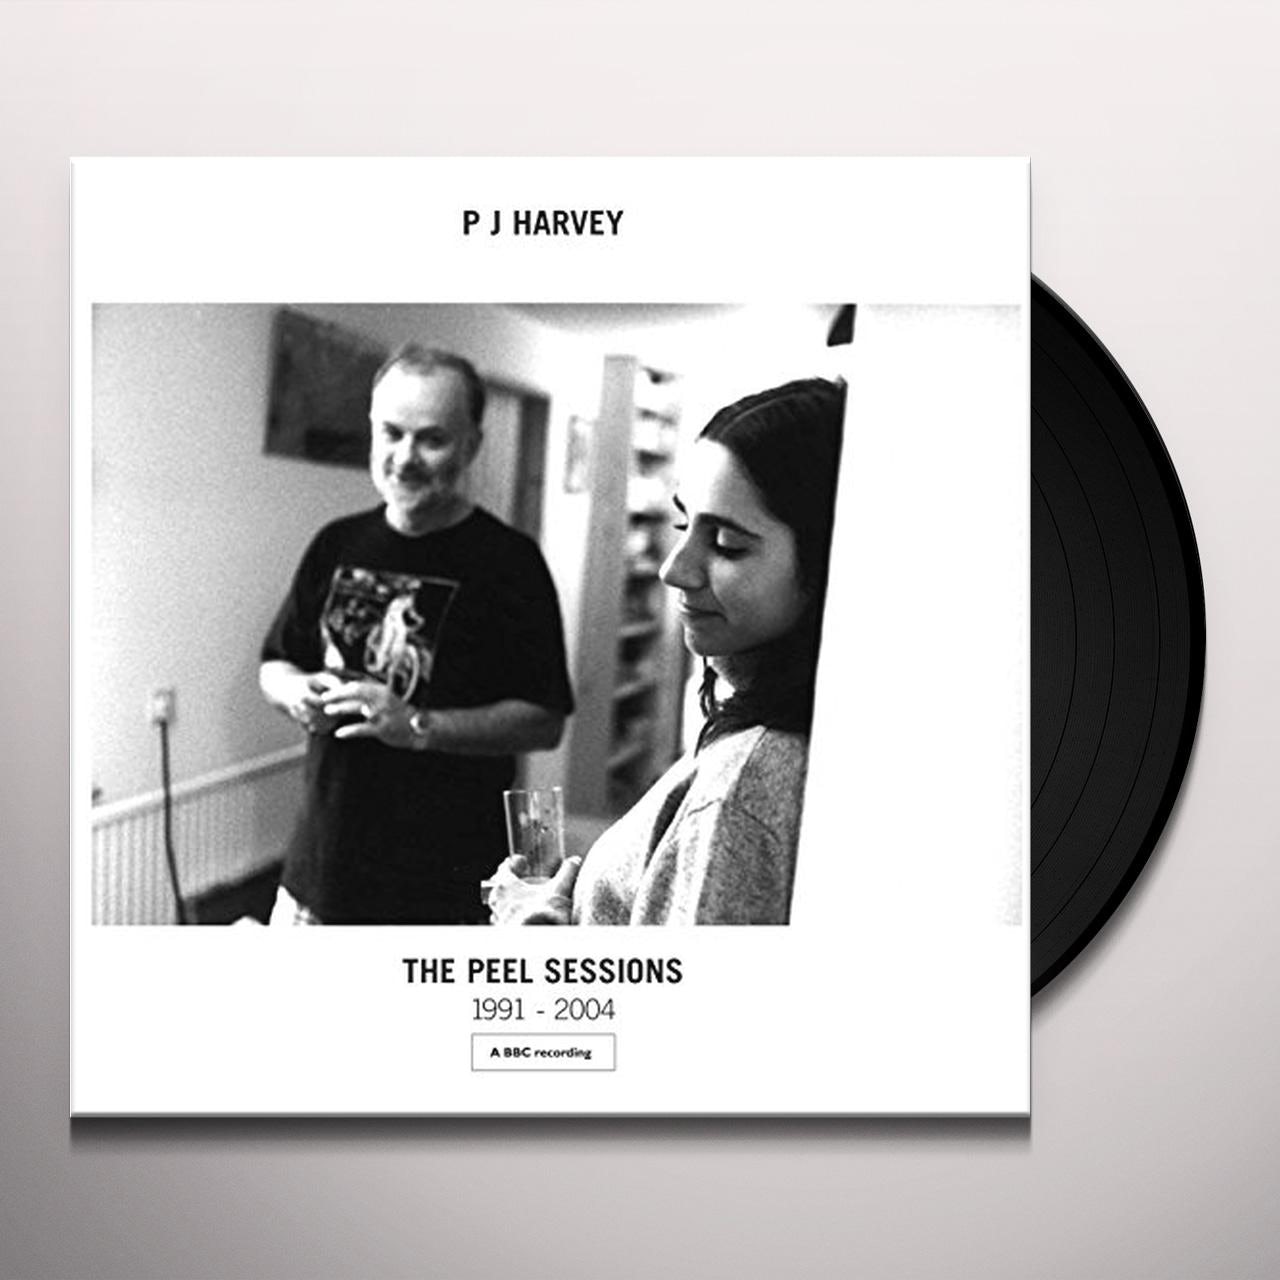 PJ HARVEY - THE PEEL SESSIONS 1991-2004